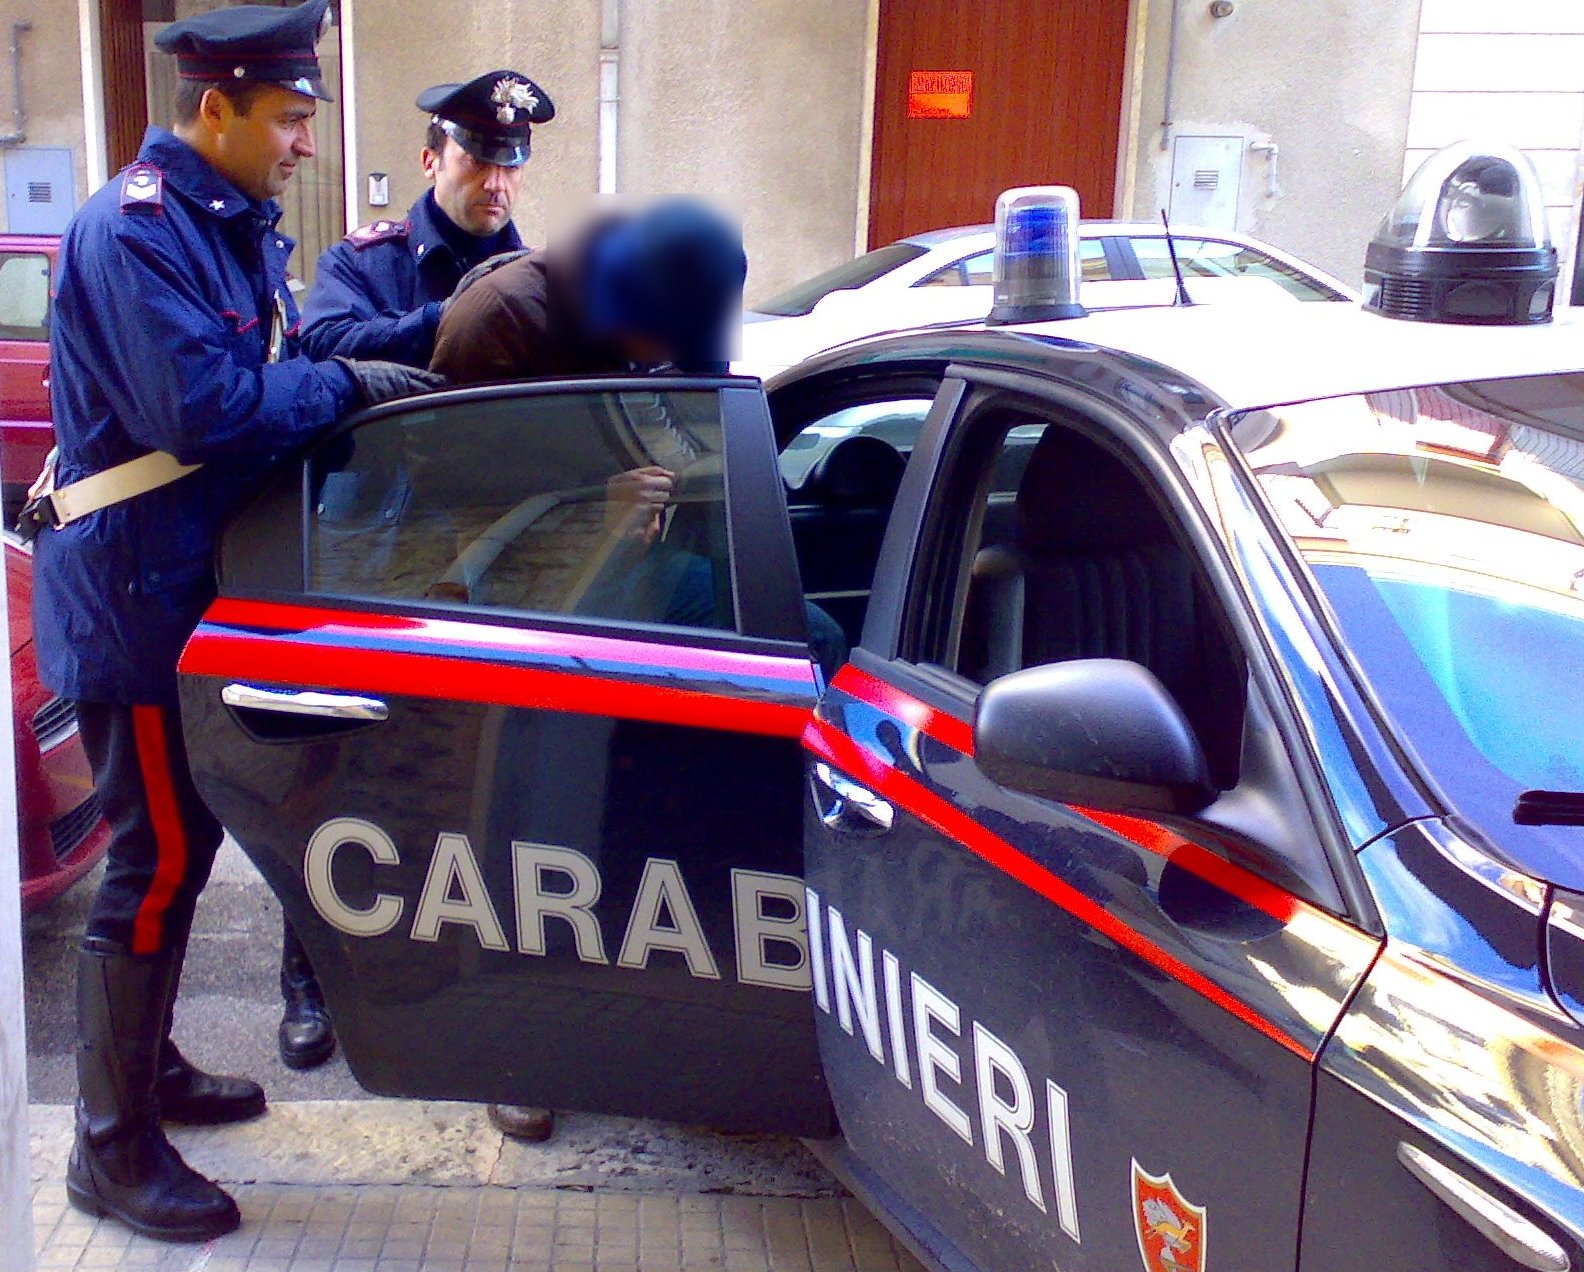 arresto-carabinieri1.jpg (1584×1272)